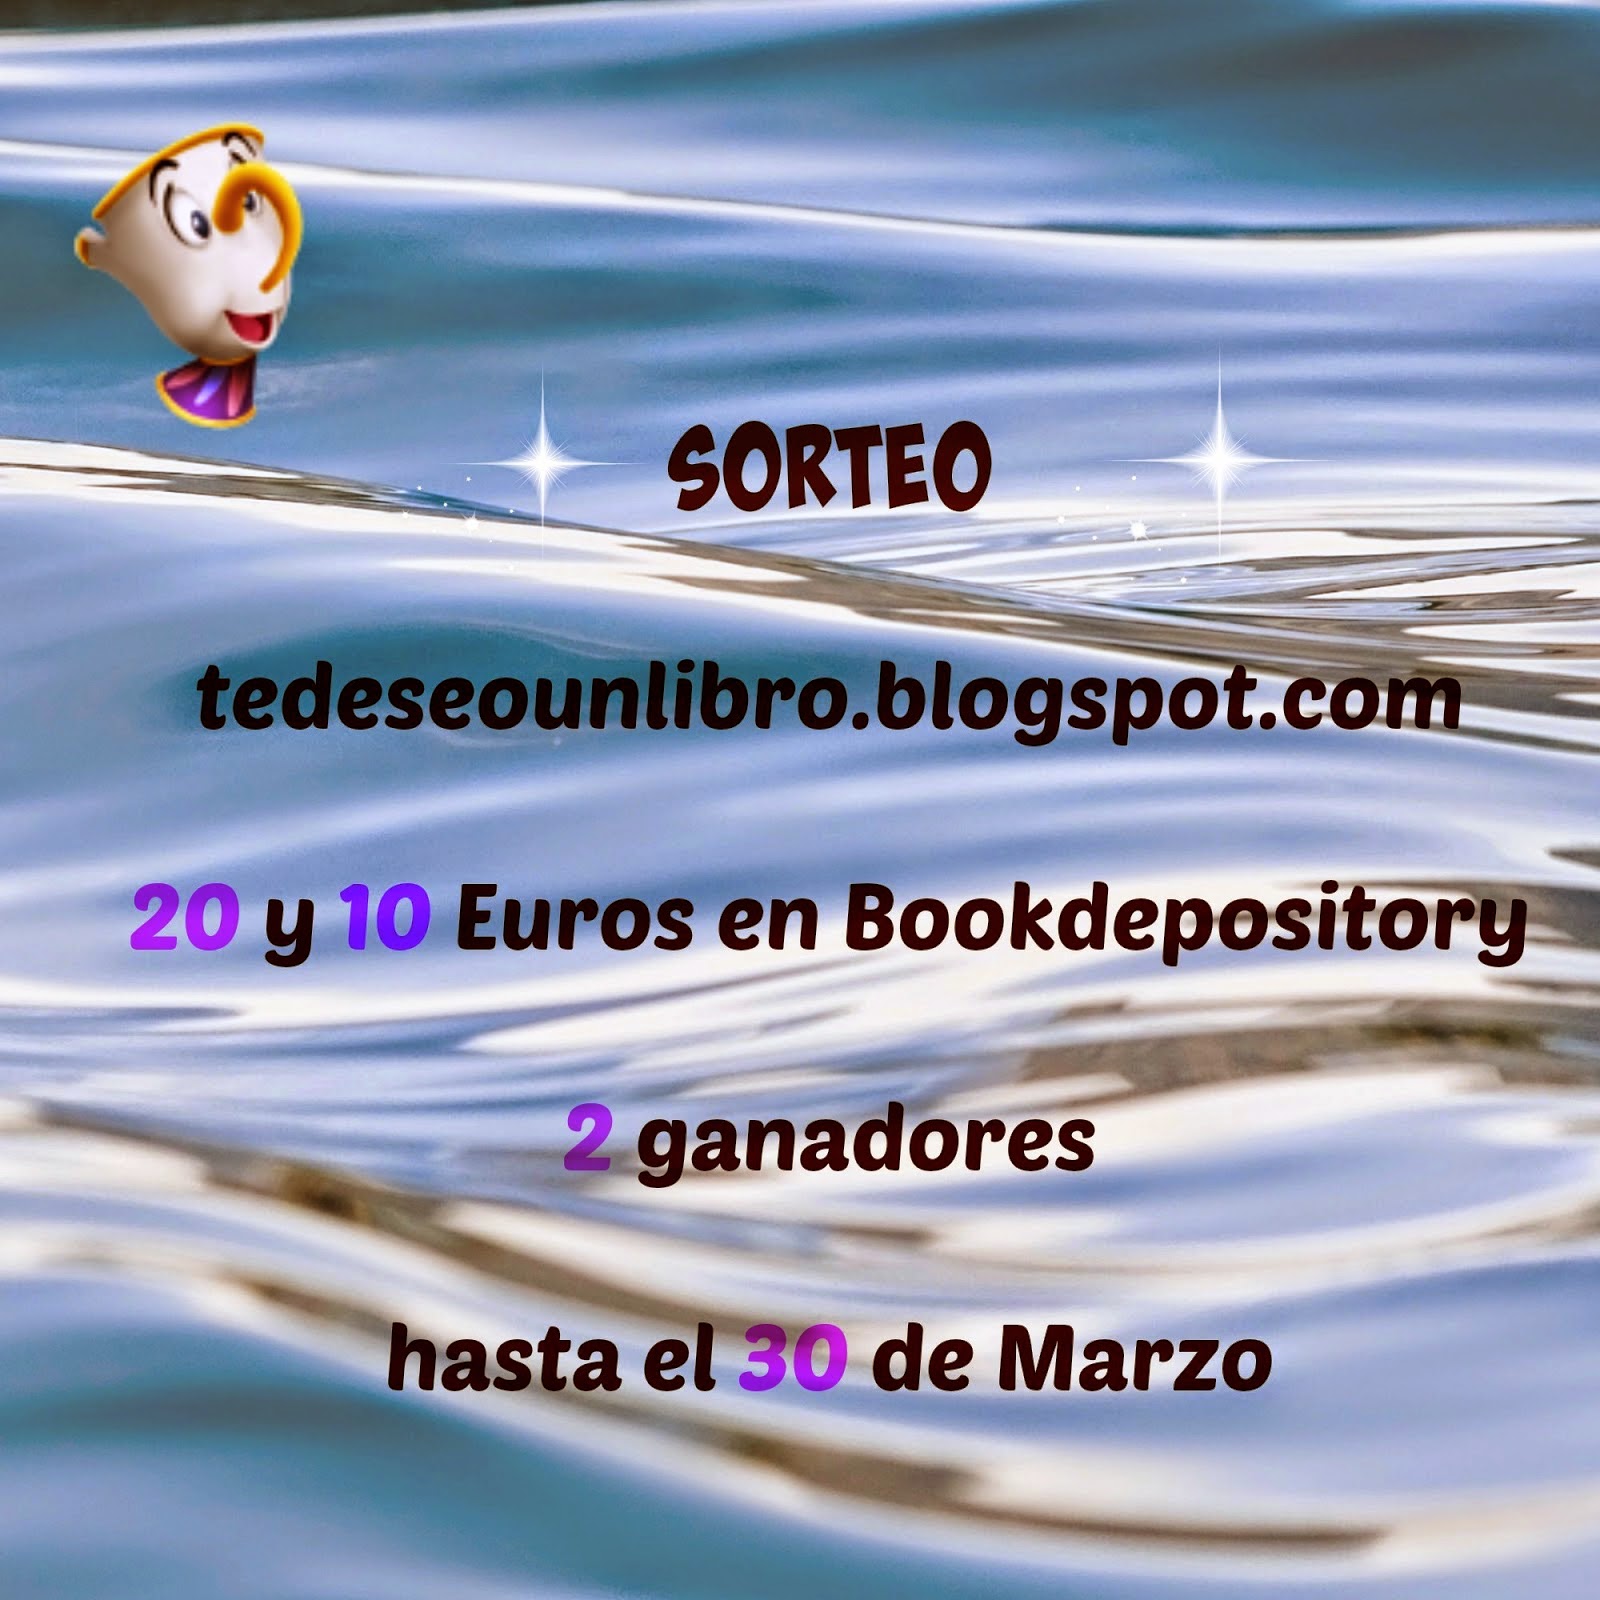 http://tedeseounlibro.blogspot.com.es/2015/02/sorteo-internacional-500-seguidores.html